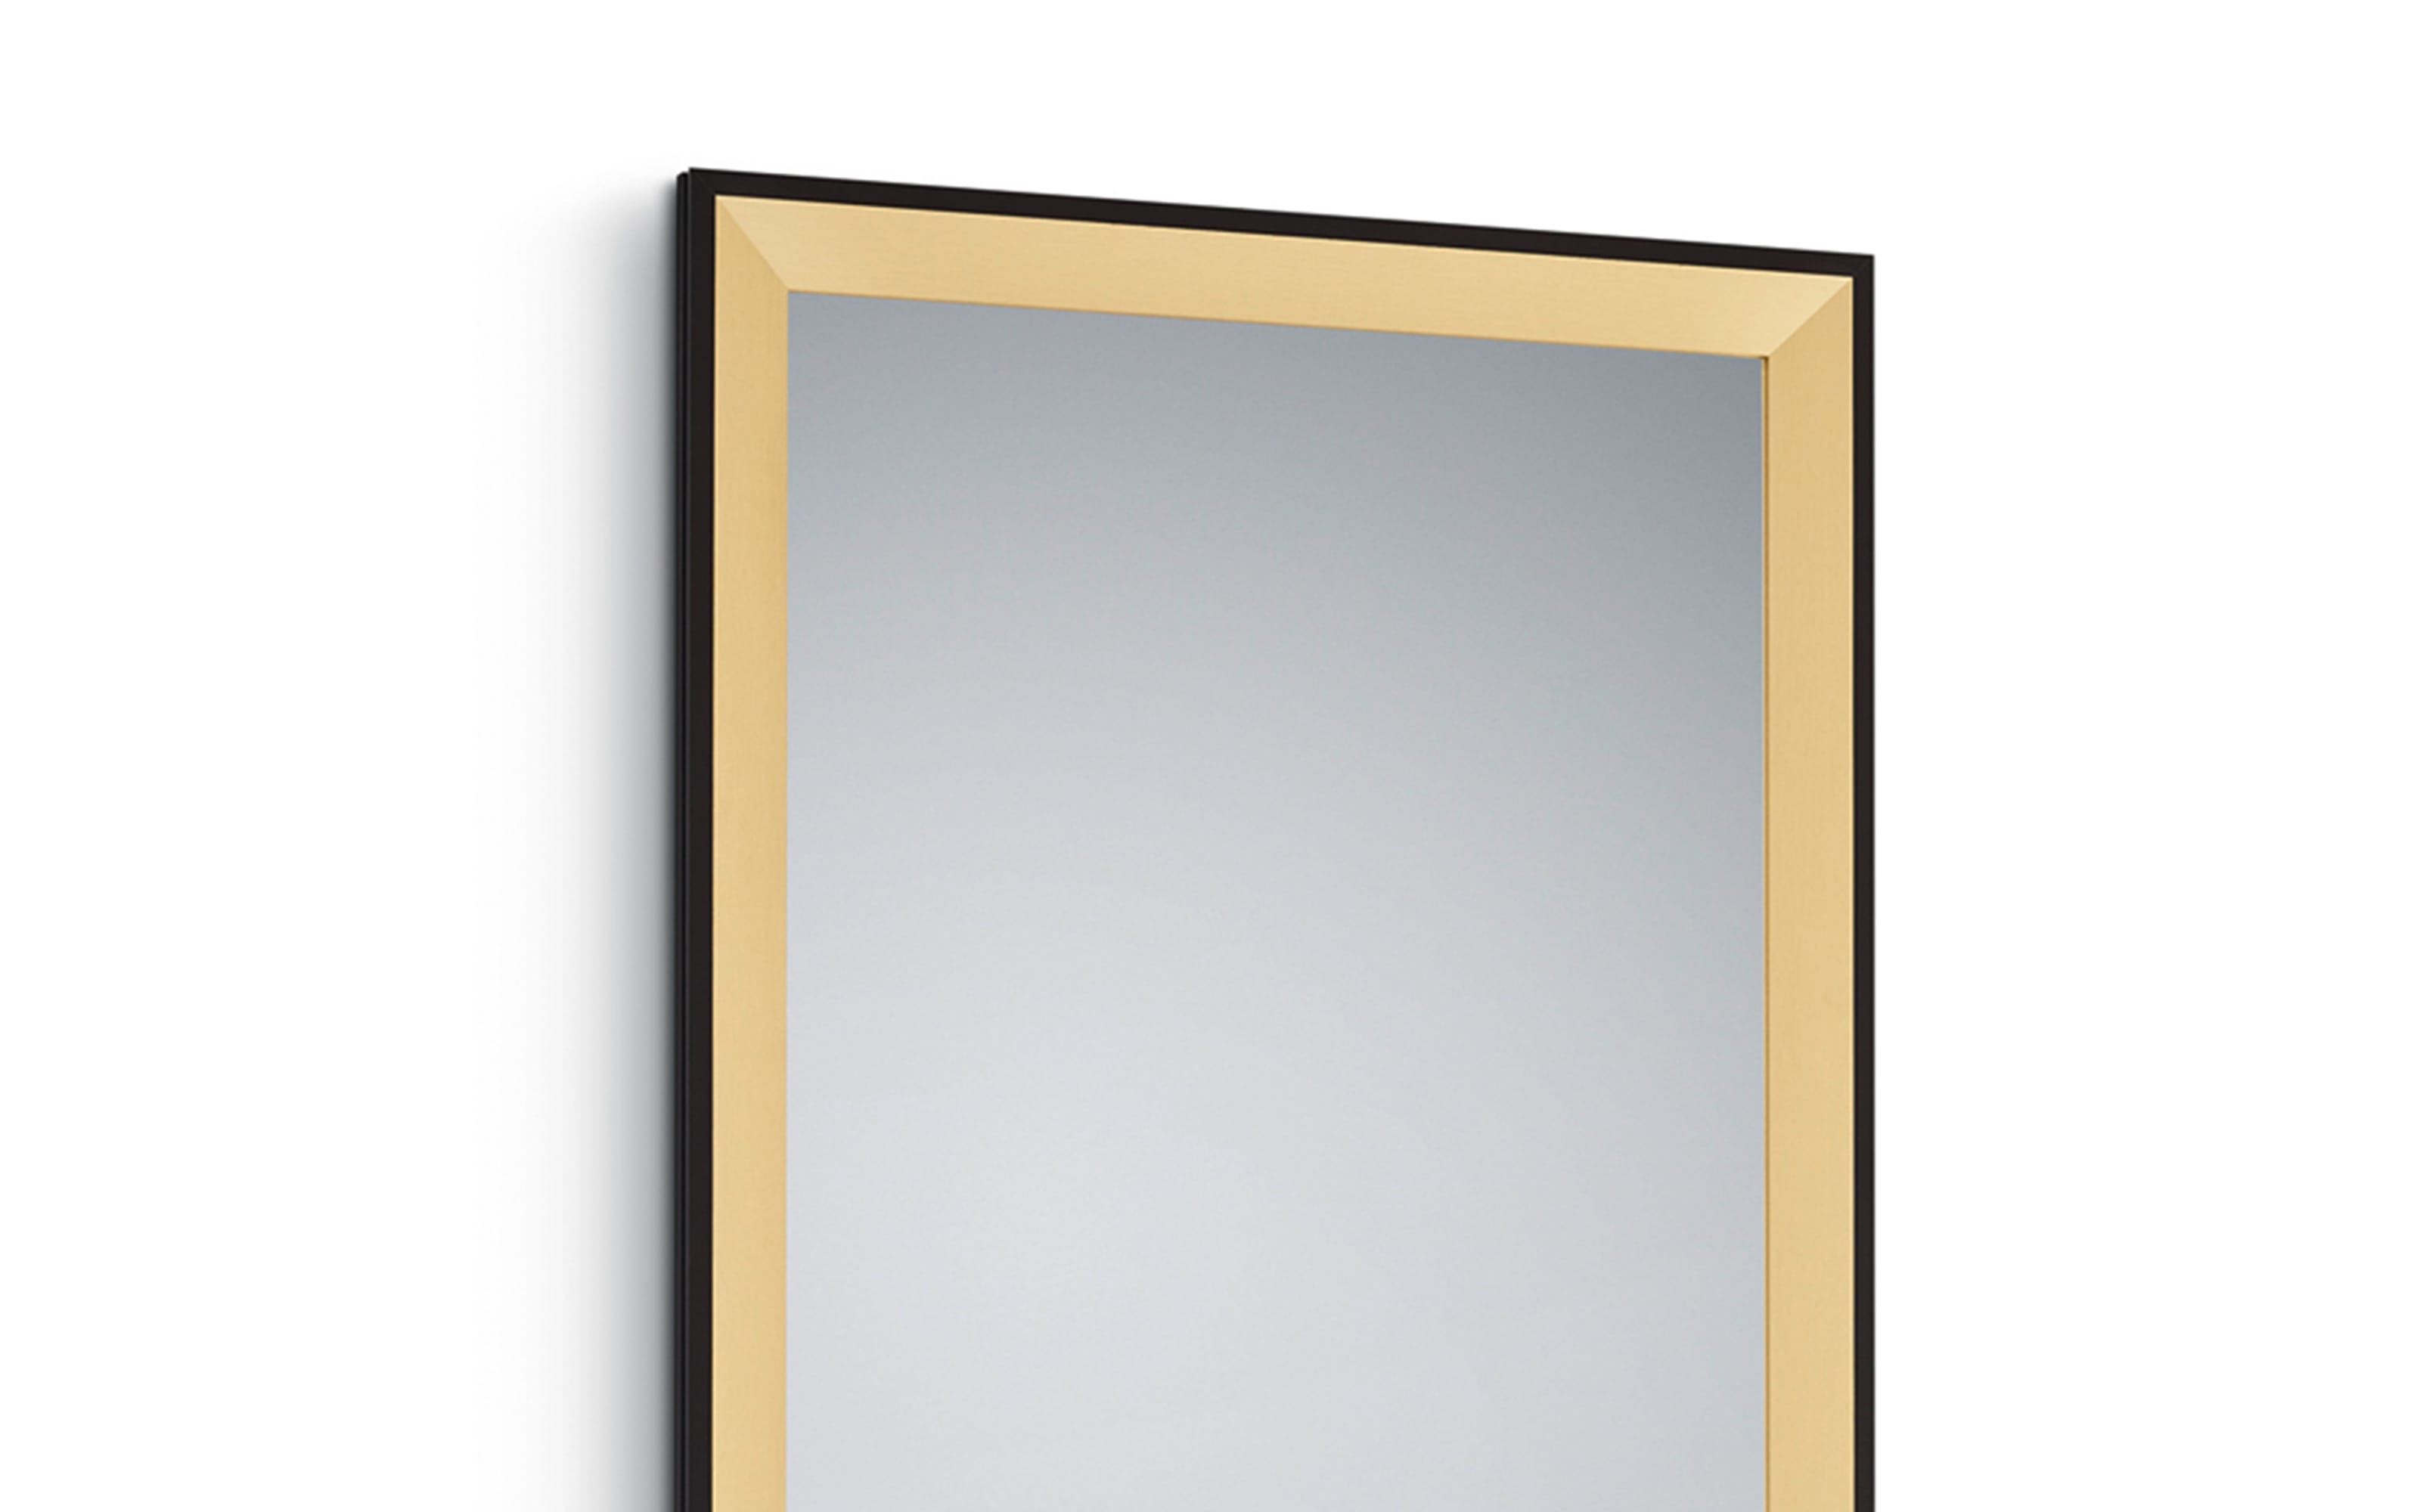 Rahmenspiegel Bianka in goldfarbig/schwarz, 70 x 170 cm